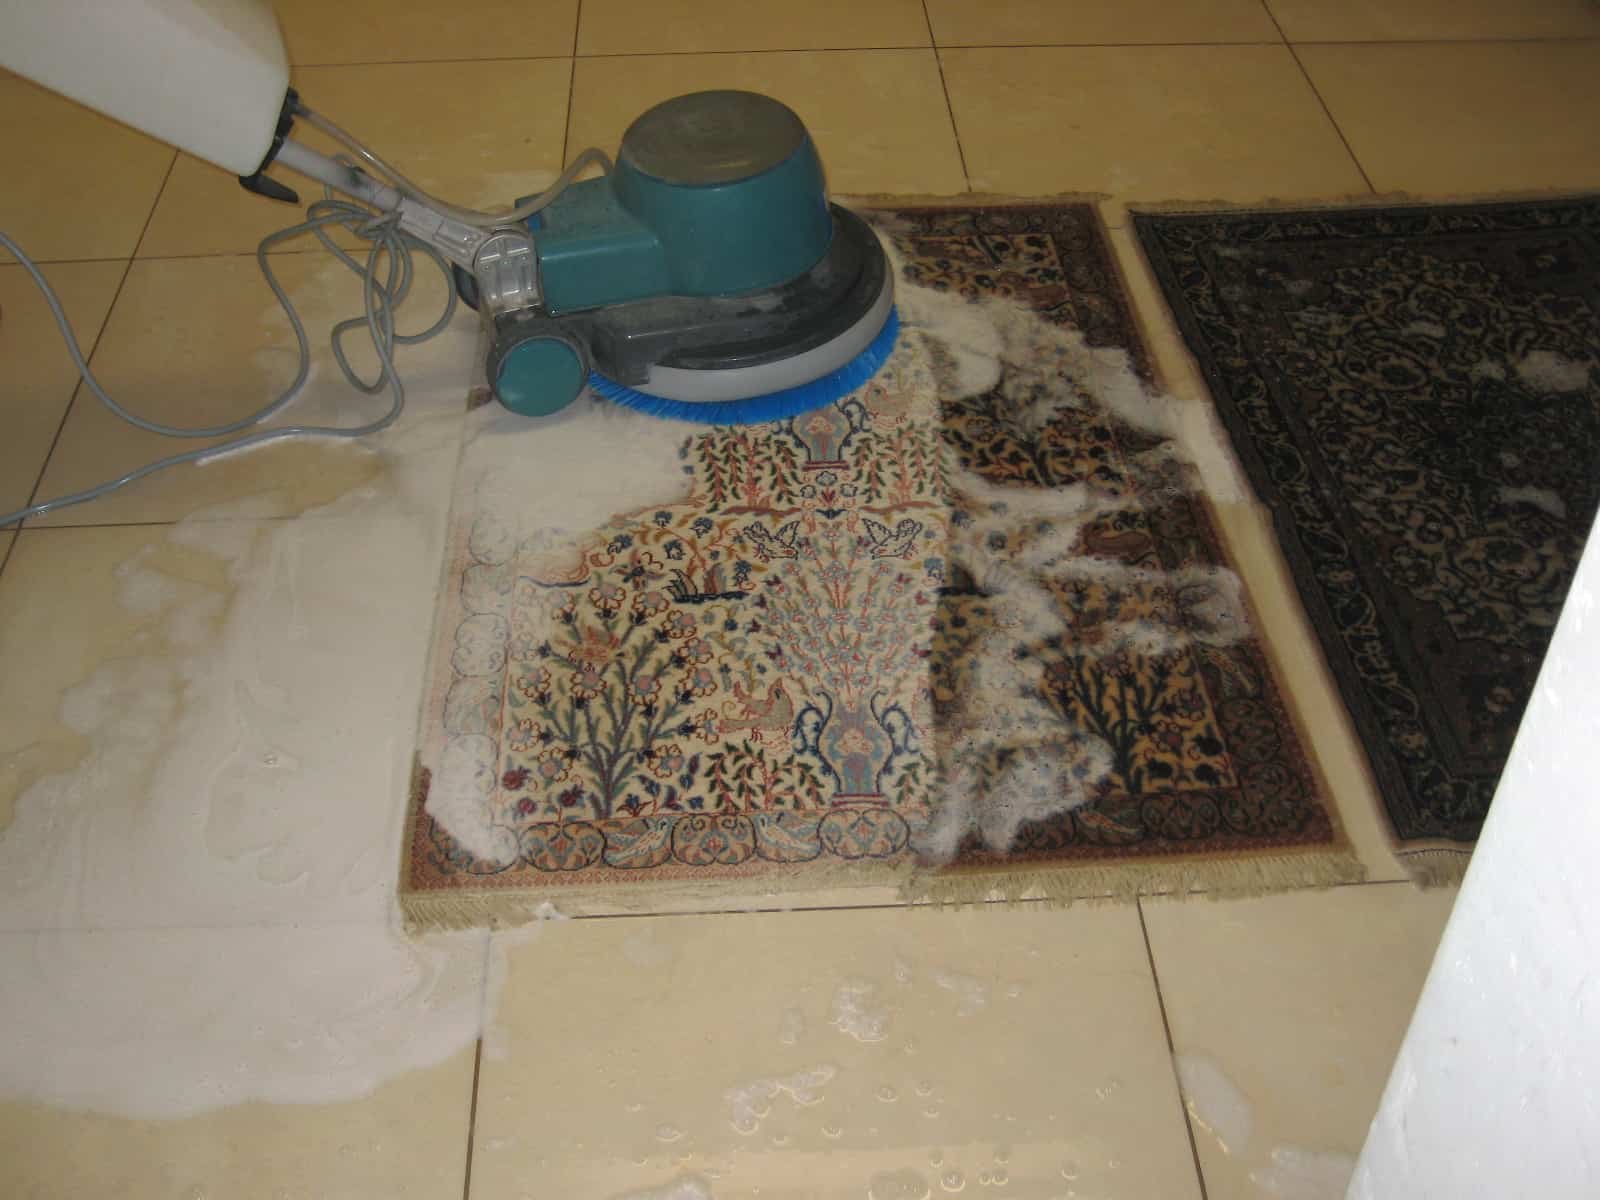 Comment nettoyer un tapis avec une shampouineuse ?